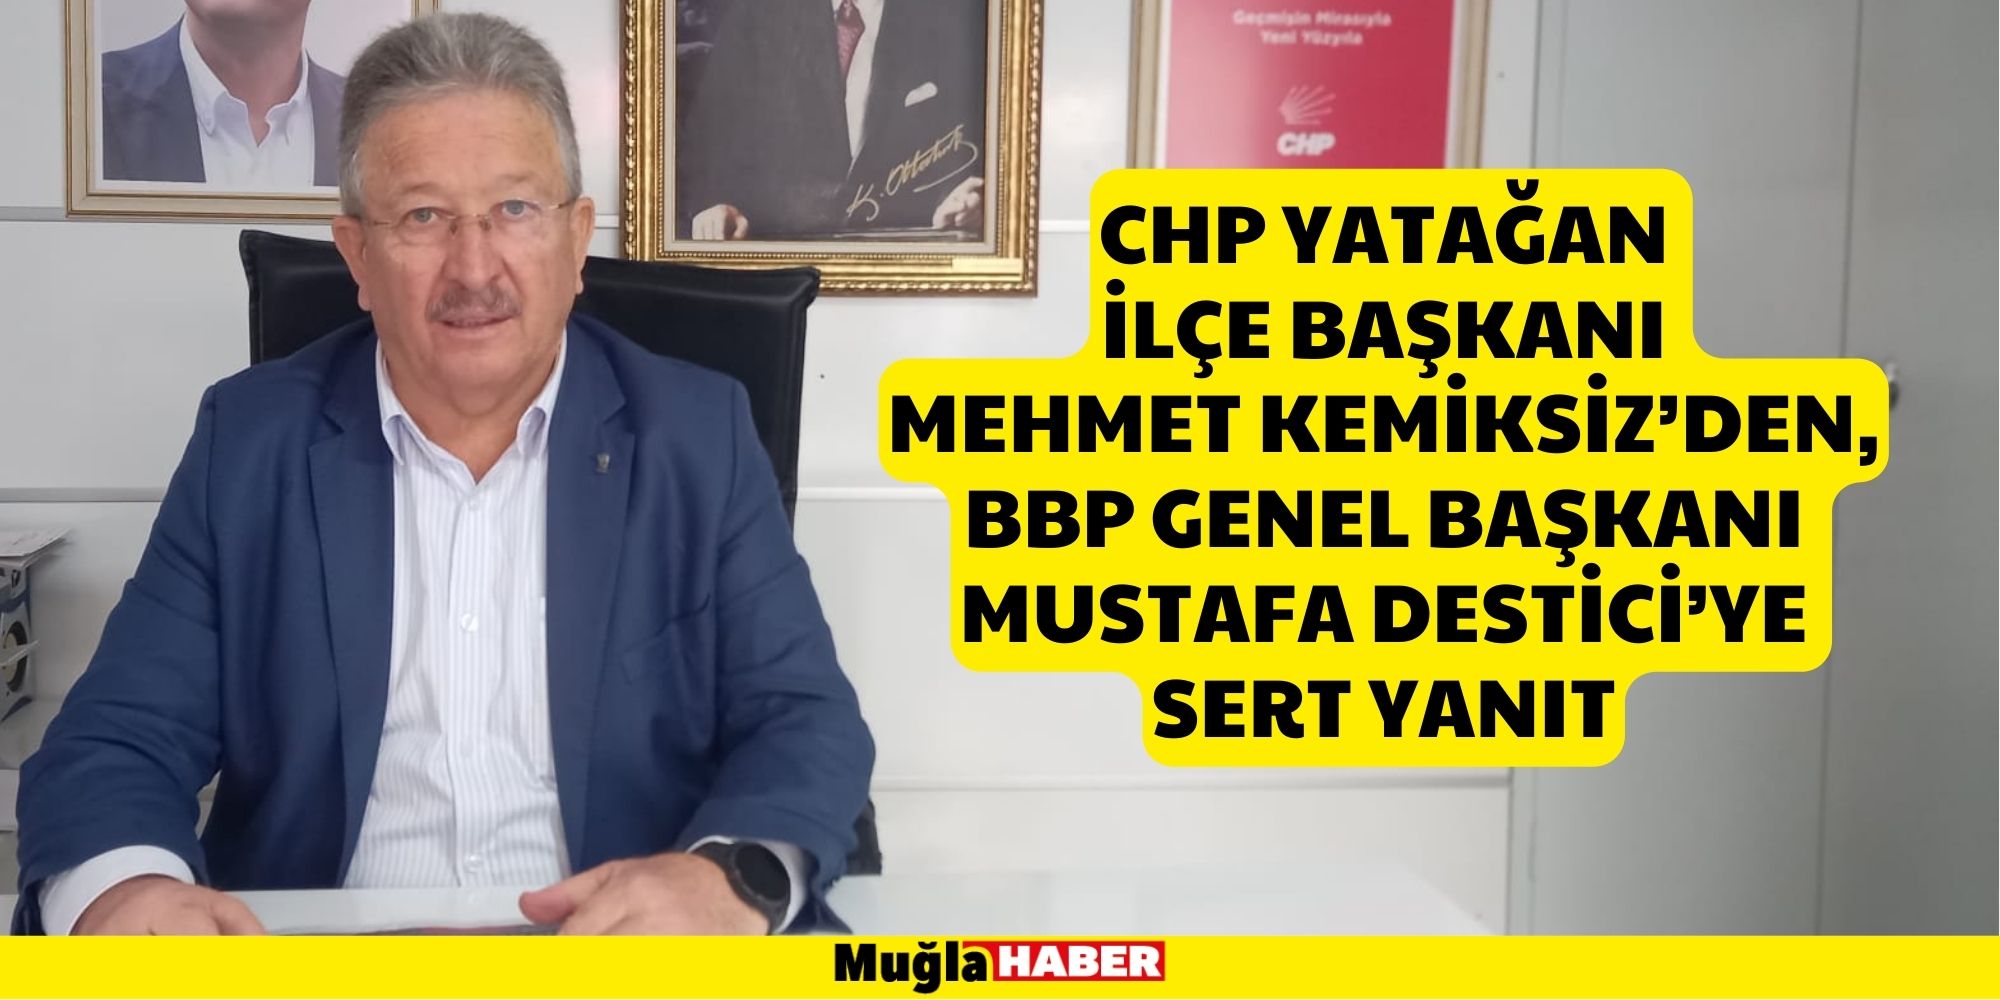 CHP Yatağan İlçe Başkanı Mehmet Kemiksiz’den, BBP Genel Başkanı Mustafa Destici’ye Sert Yanıt